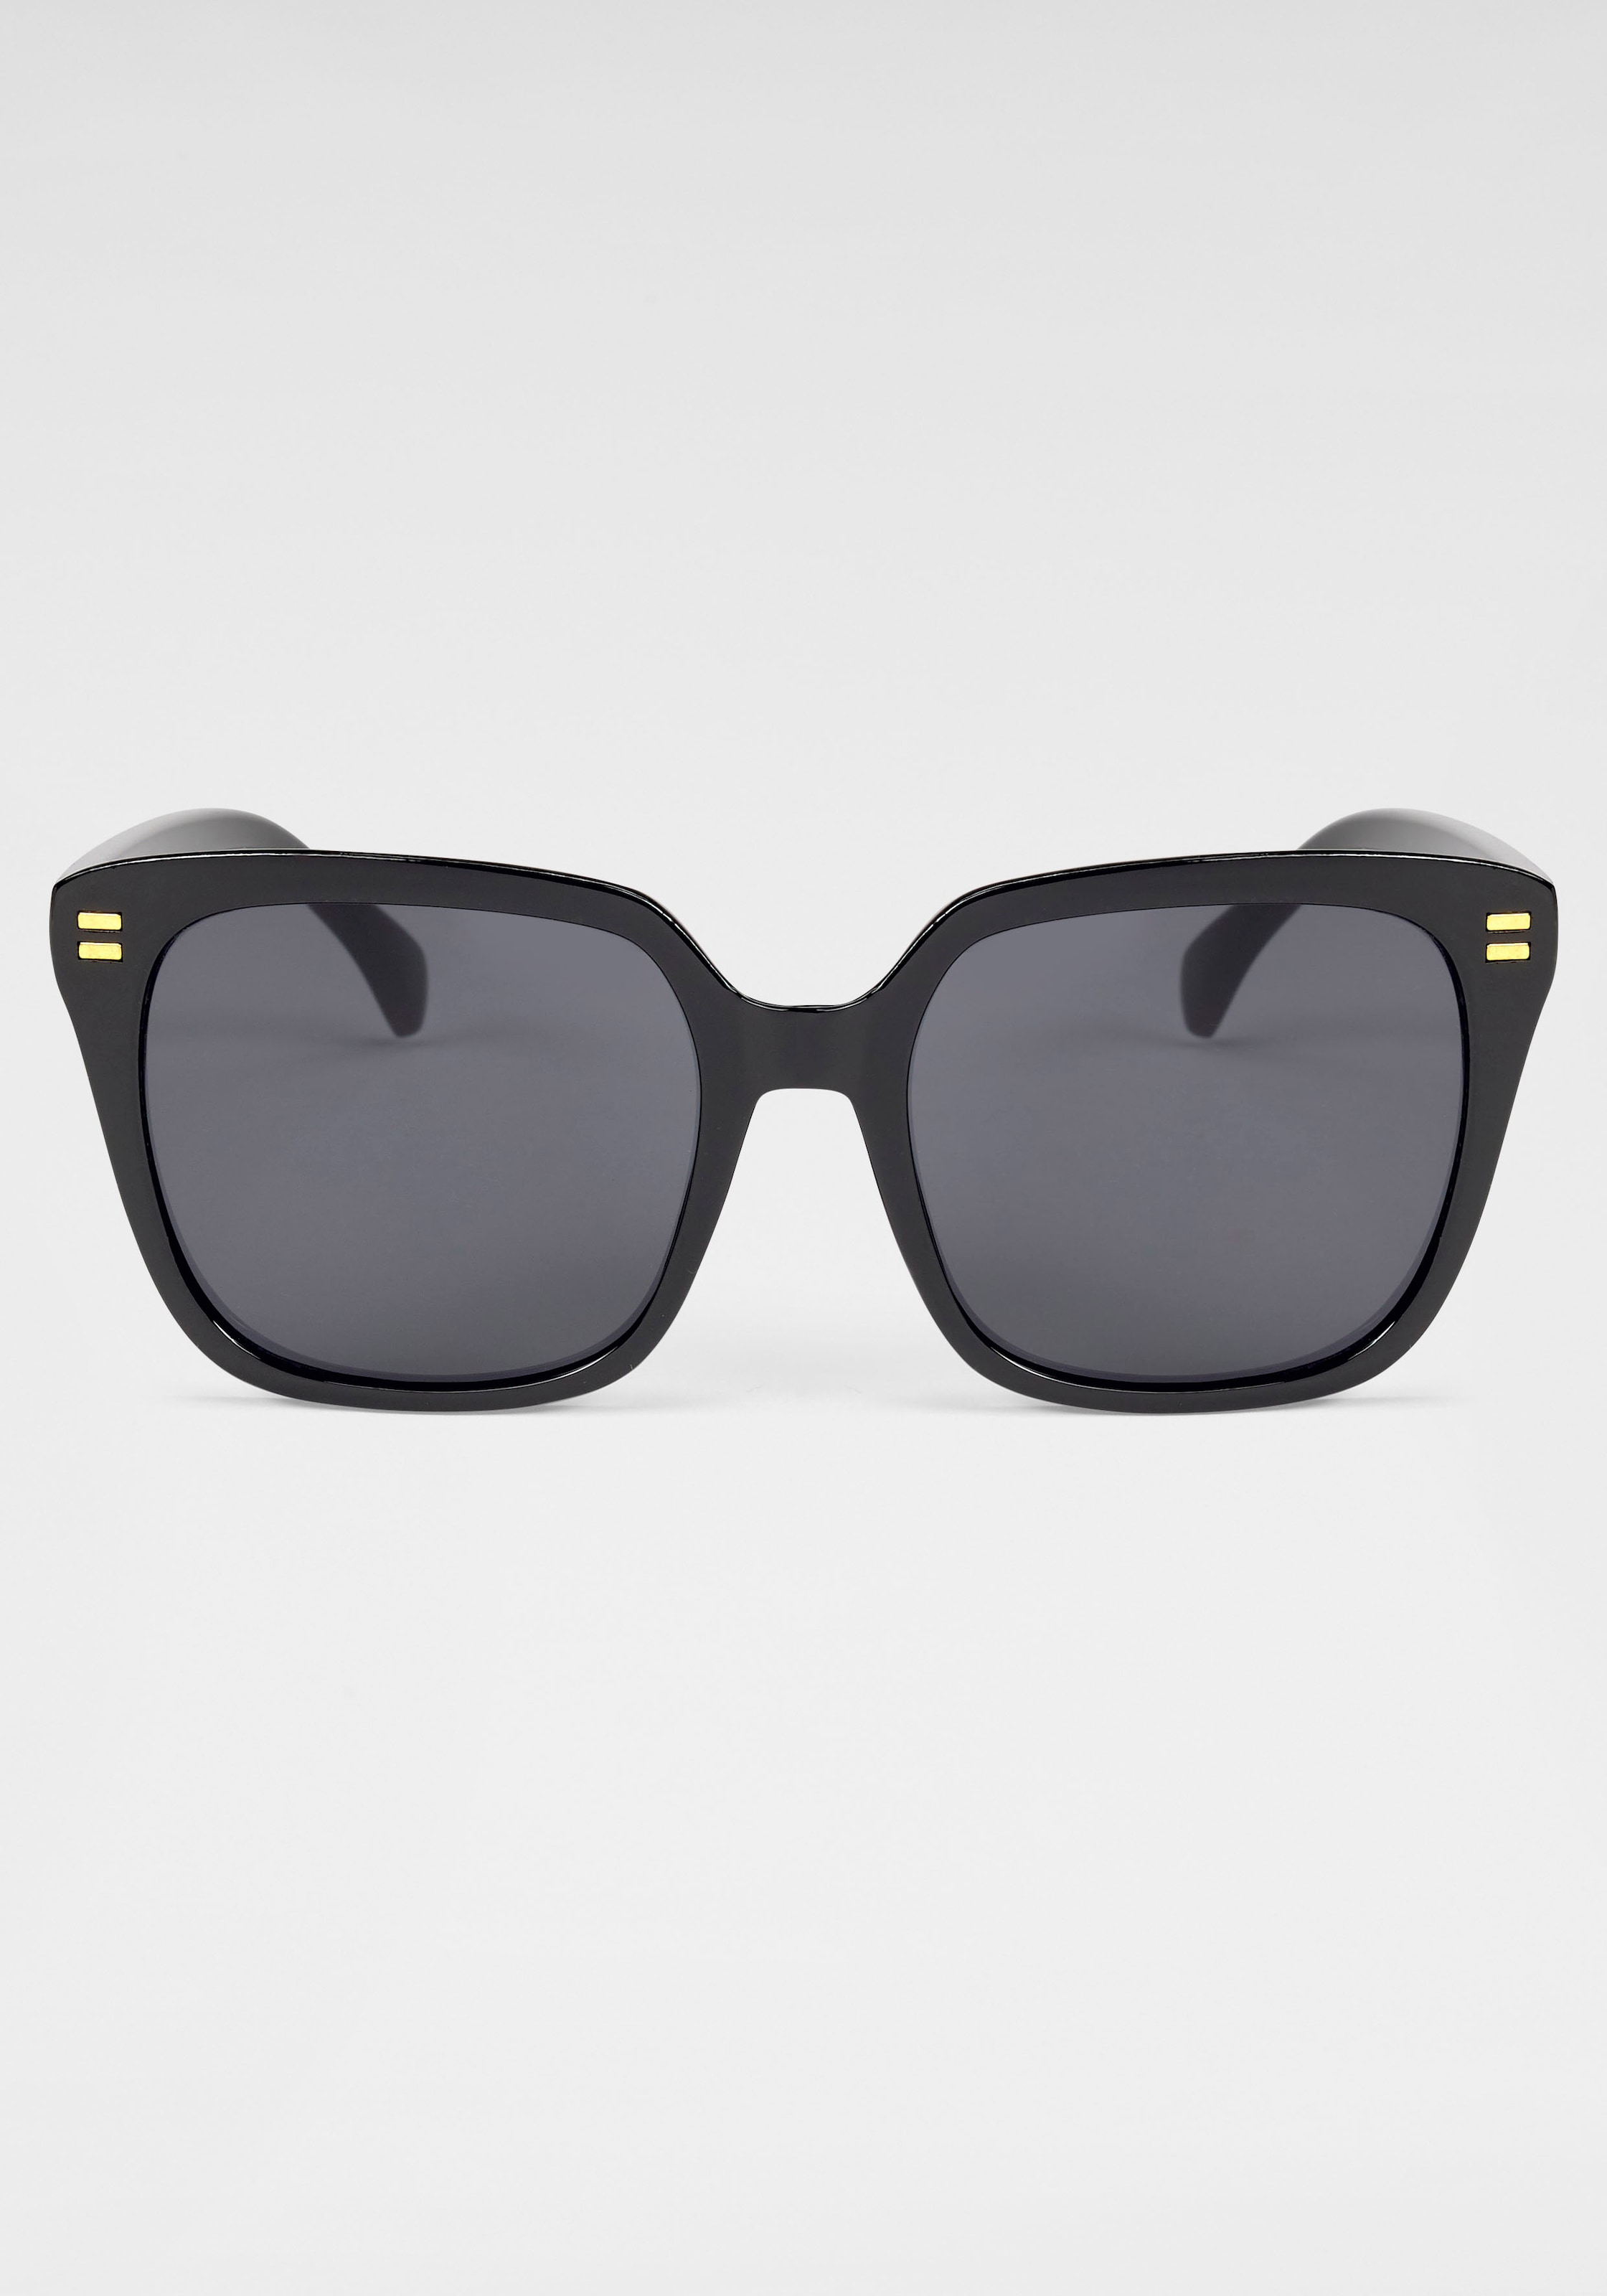 catwalk Eyewear Sonnenbrille, Retro-Sonnenbrille